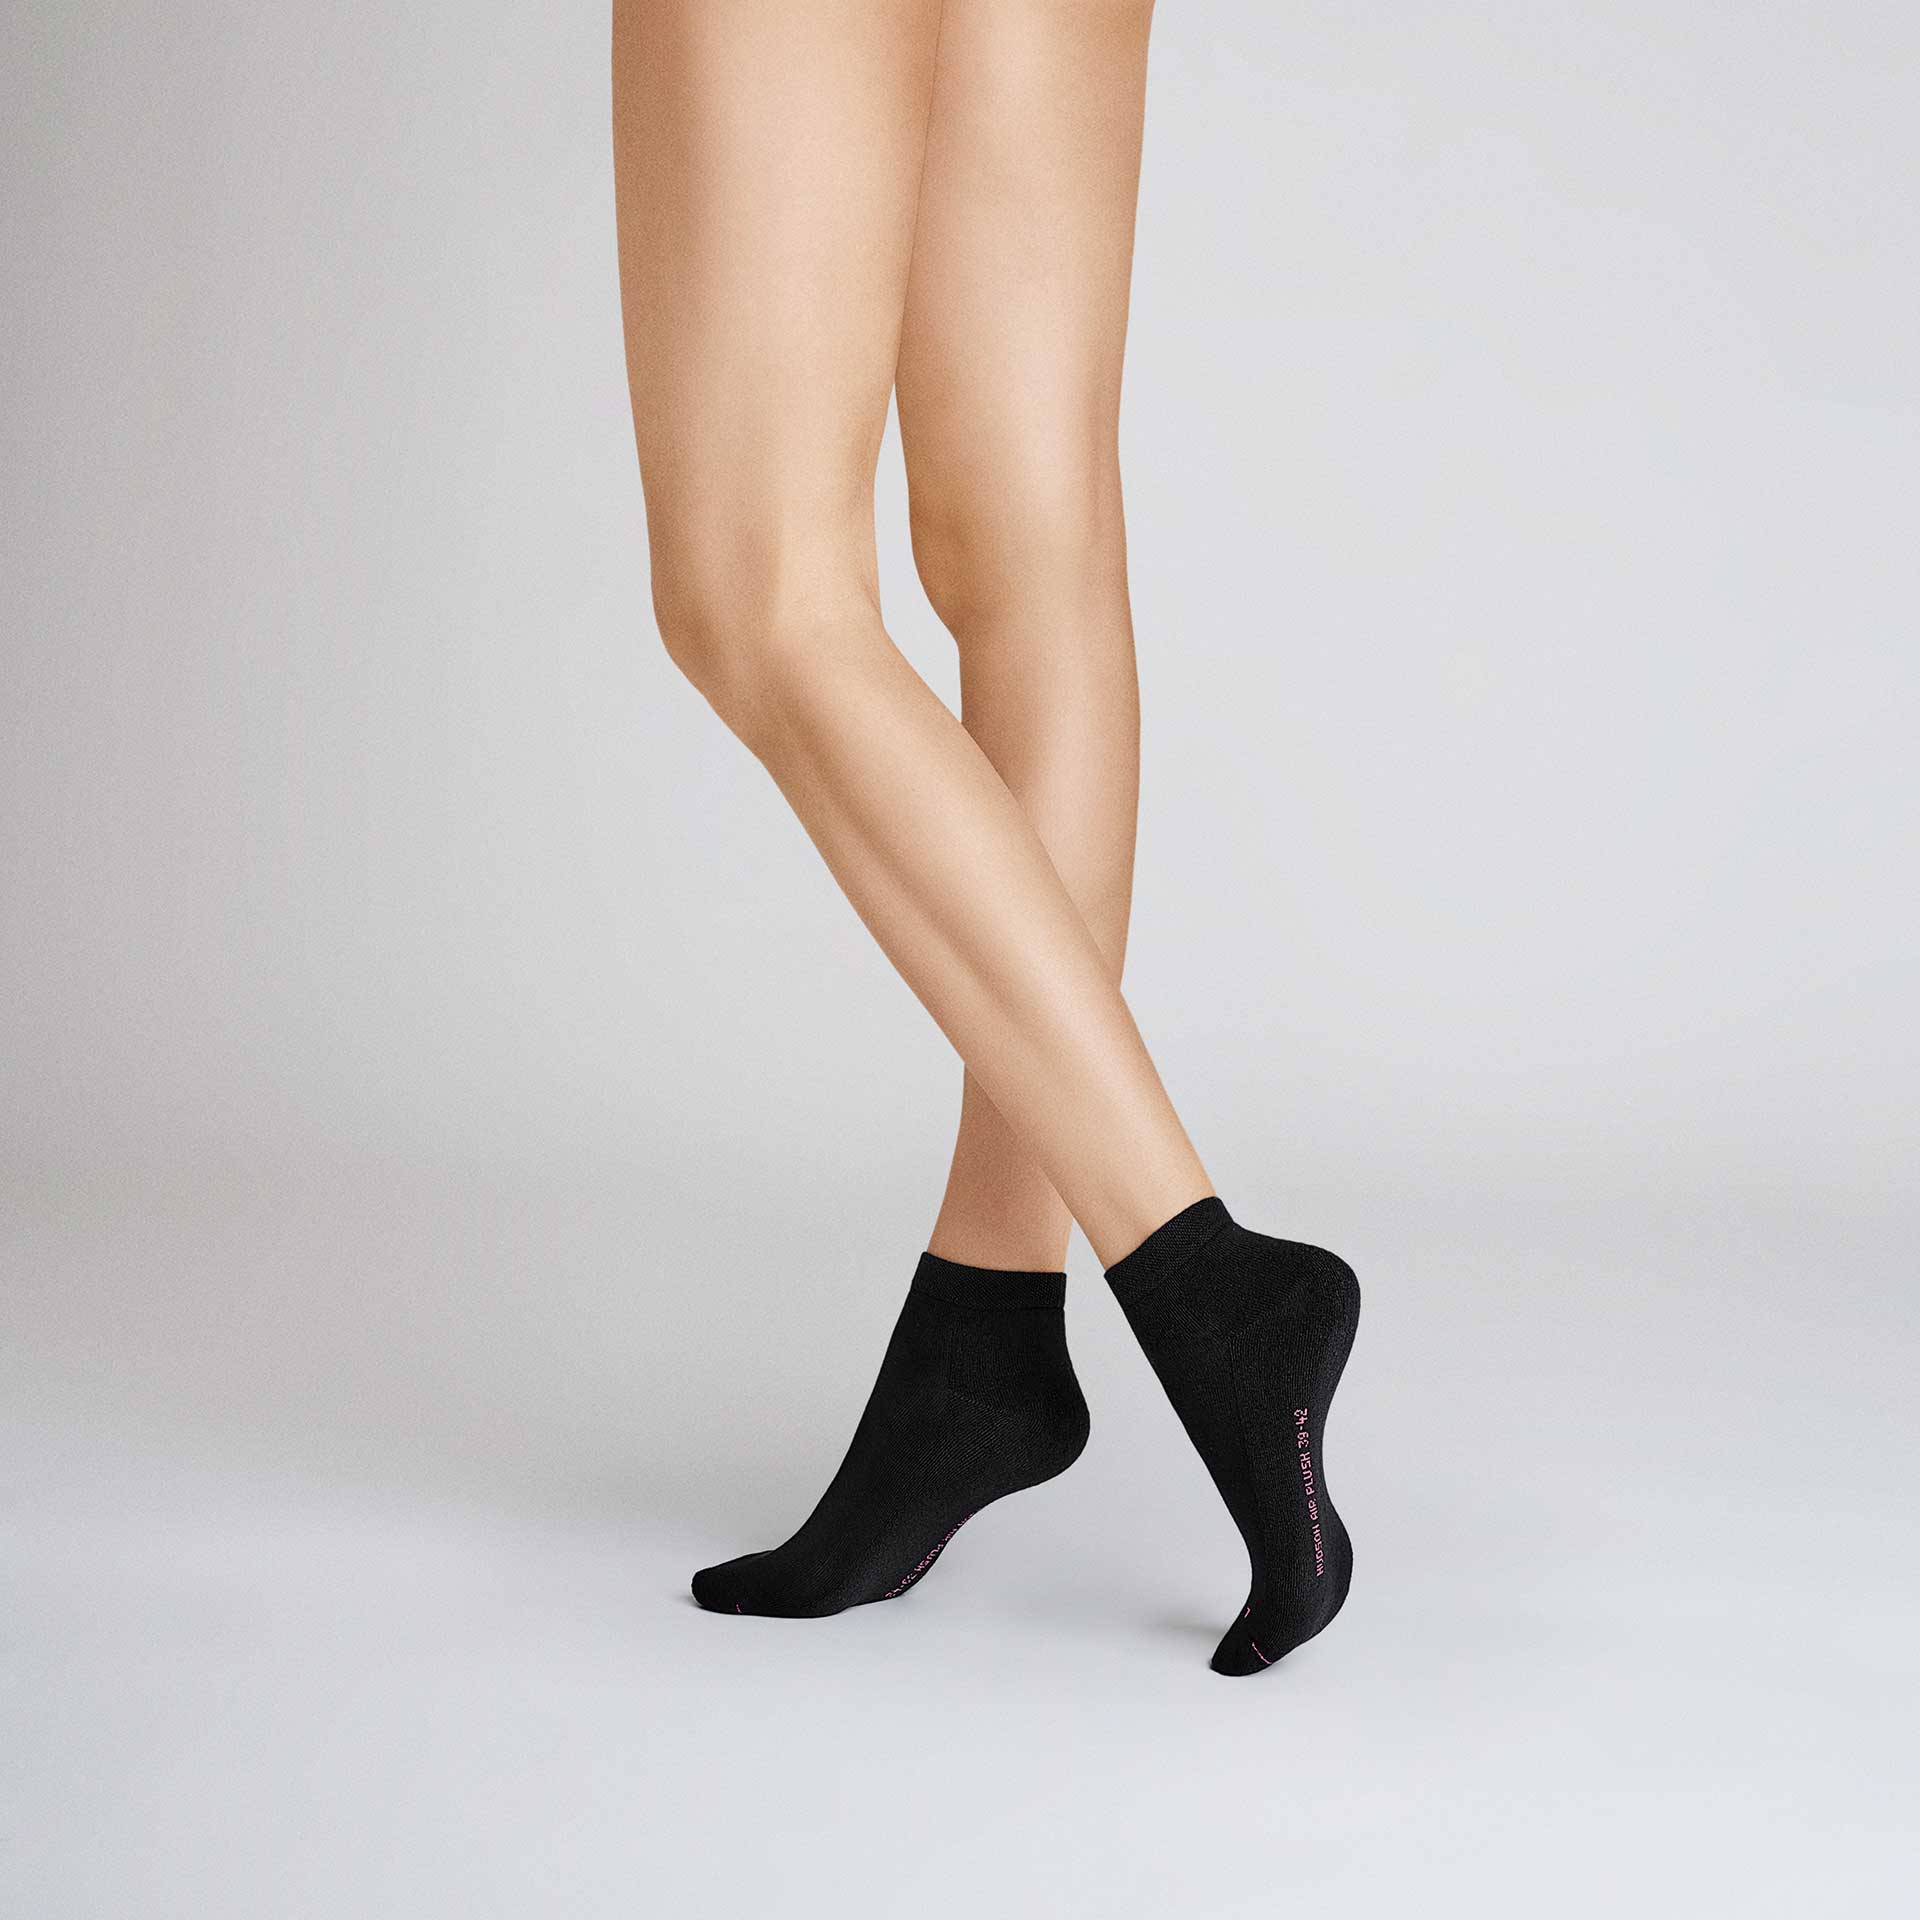 HUDSON Damen AIR PLUSH -  35/38 - Sneaker Socken mit anatomisch geformter Plüschsohle - Black (Schwarz)